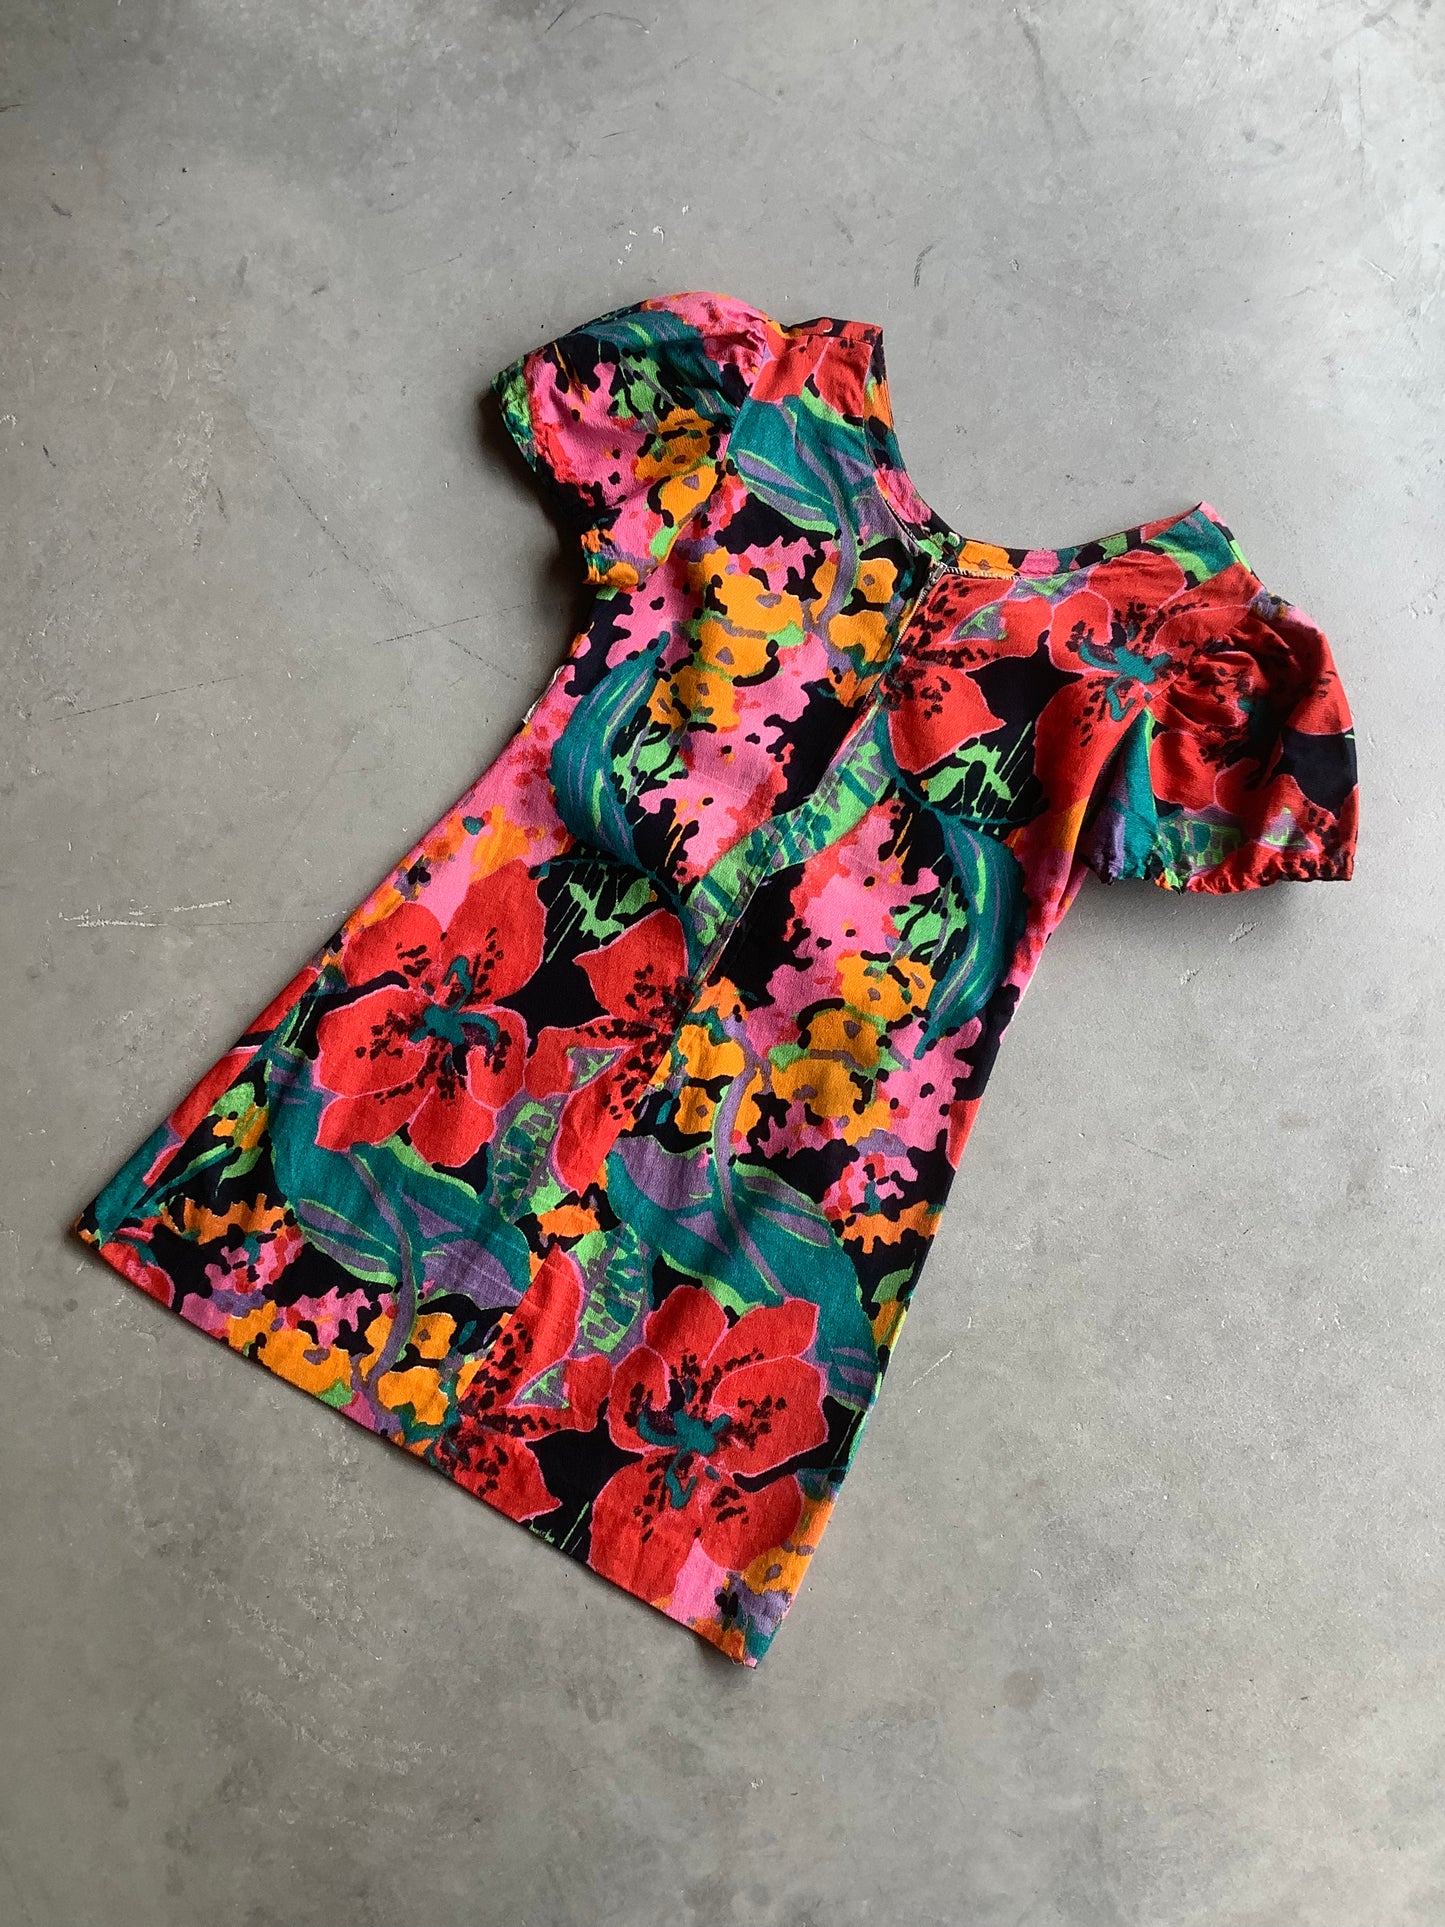 Acid Floral Mod Mini Dress